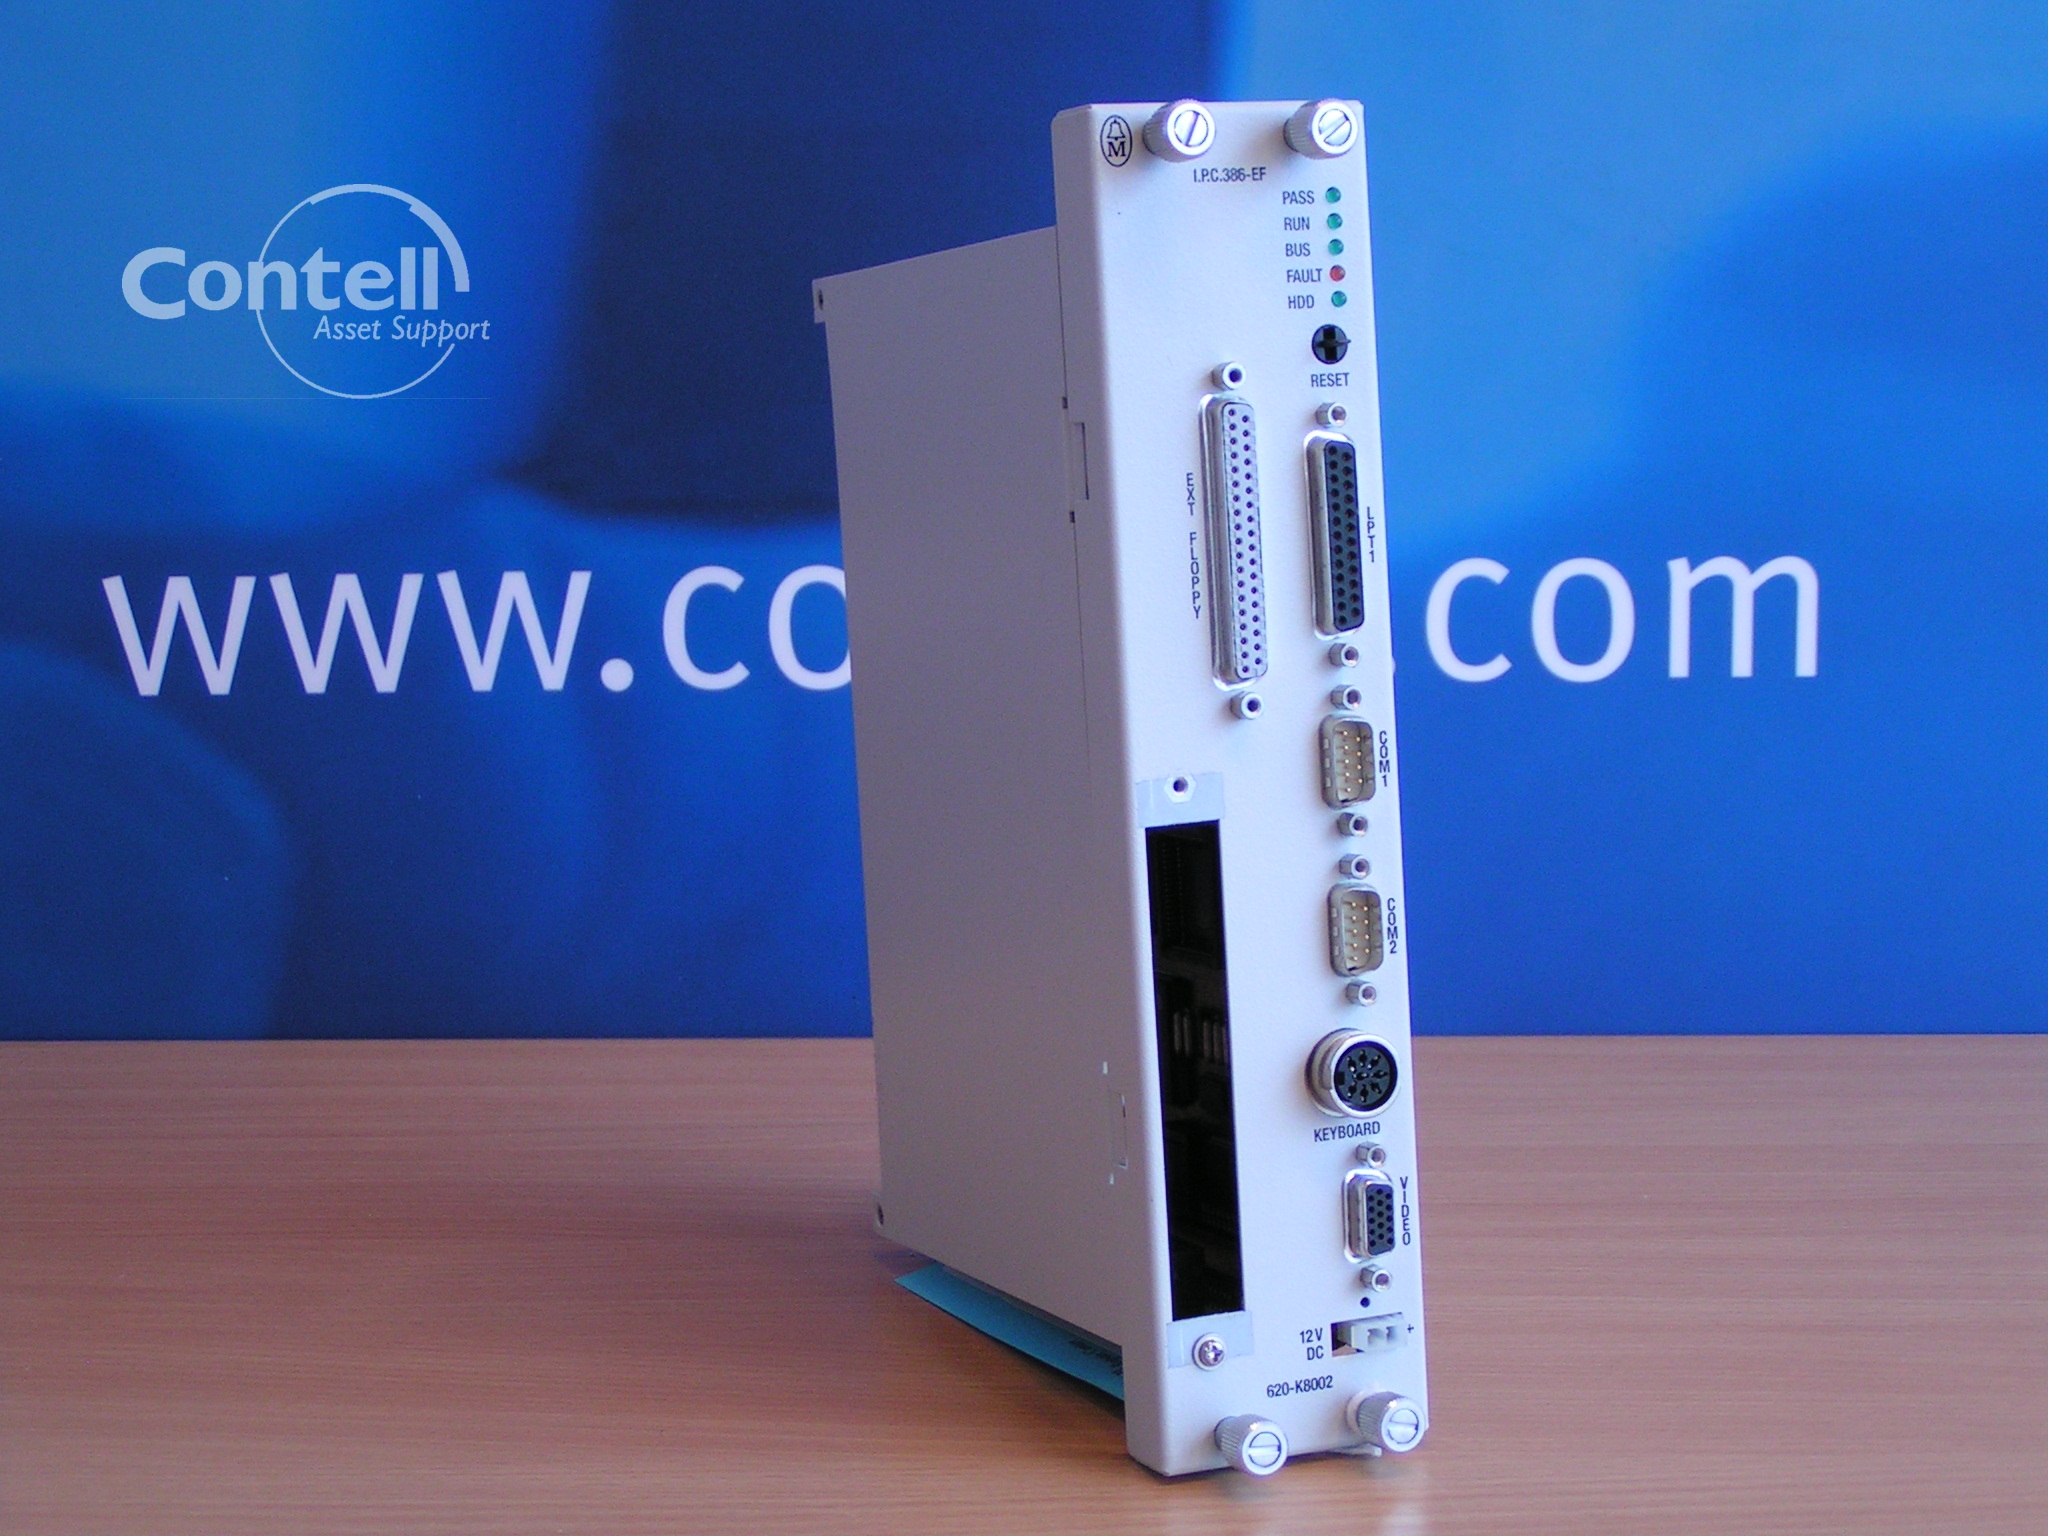 Honeywell IPC 620-K8002